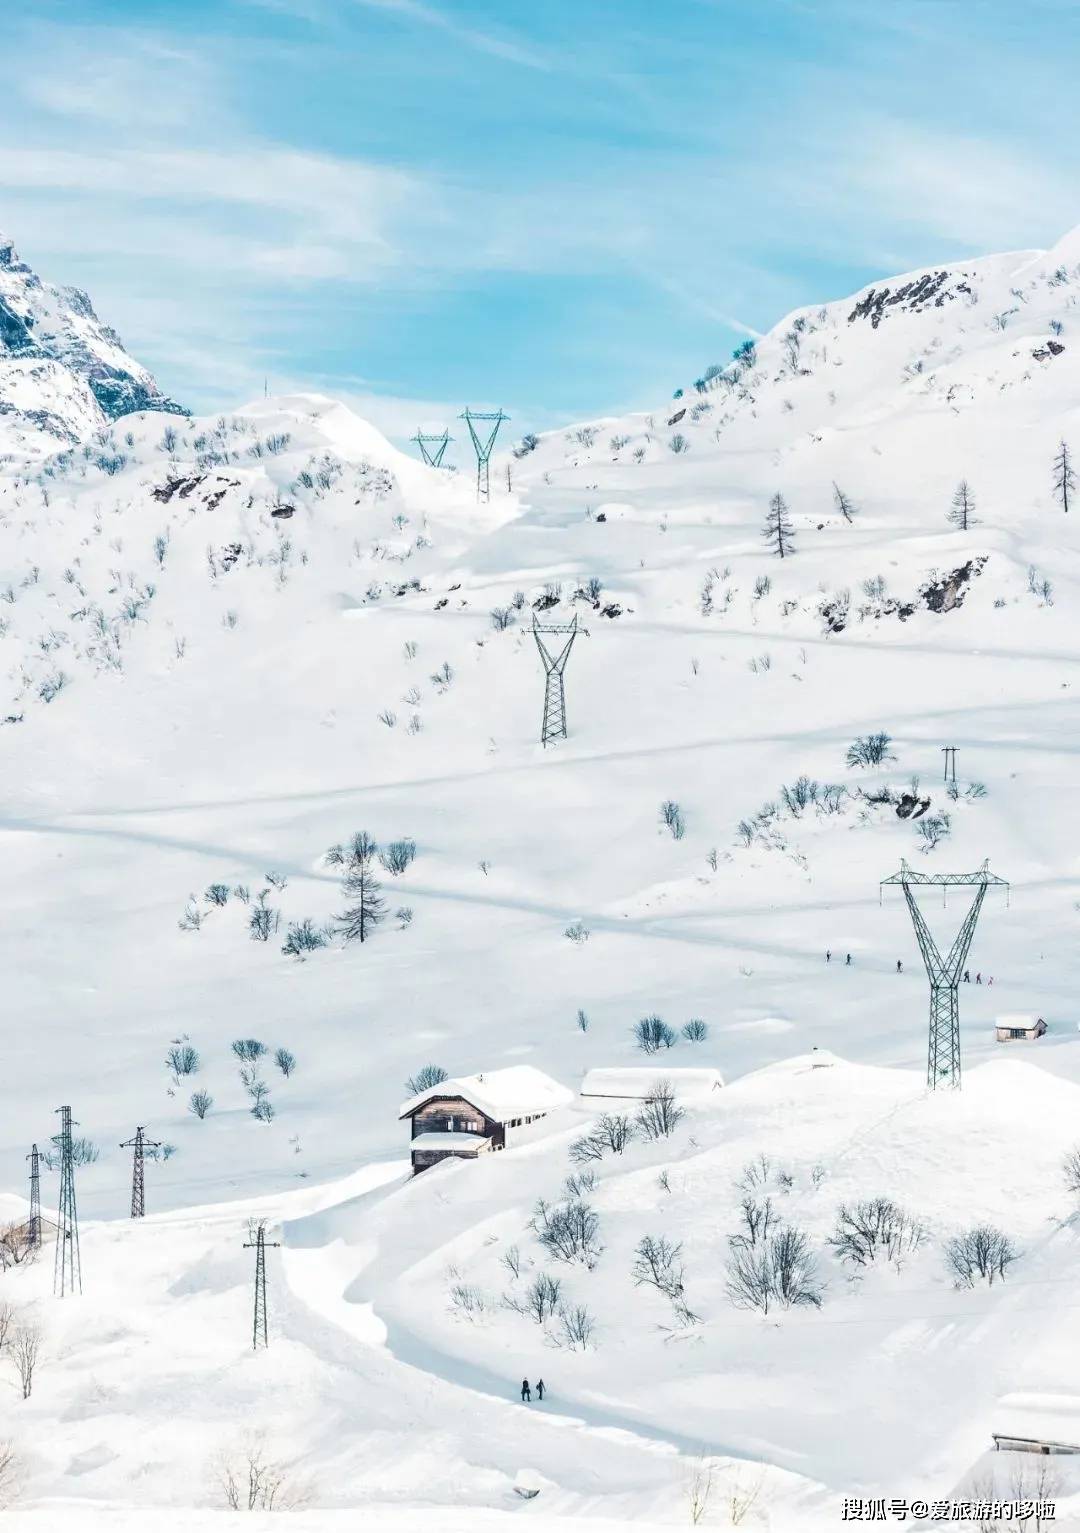 忘记瑞士北海道吧 国内这些高质量雪场 才是yyds 滑雪